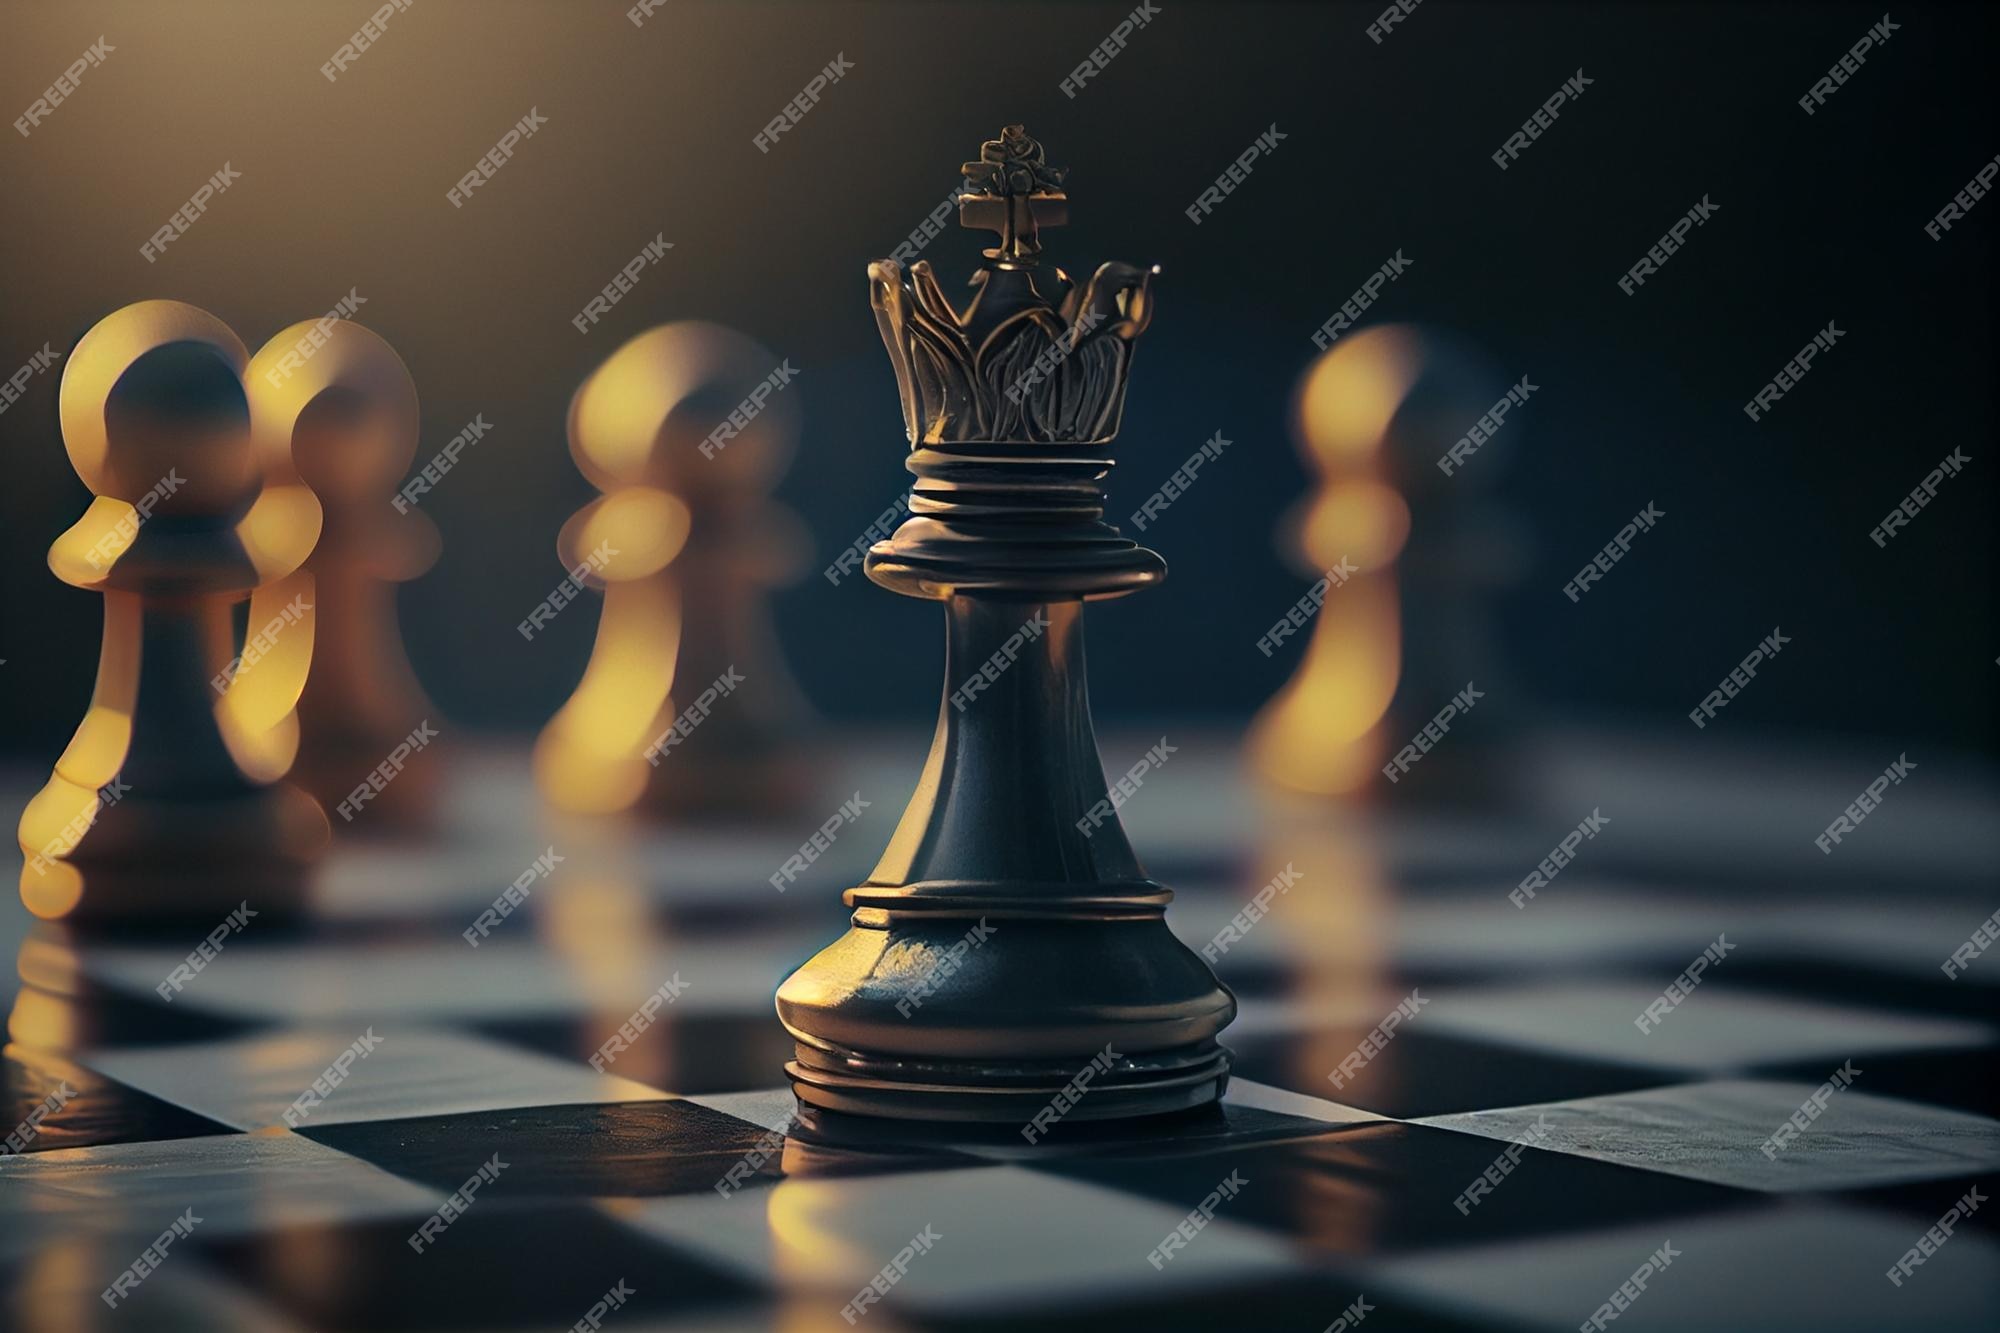 17 ideias de Bolo jogo de xadrez  peças de xadrez, xadrez, jogo de xadrez